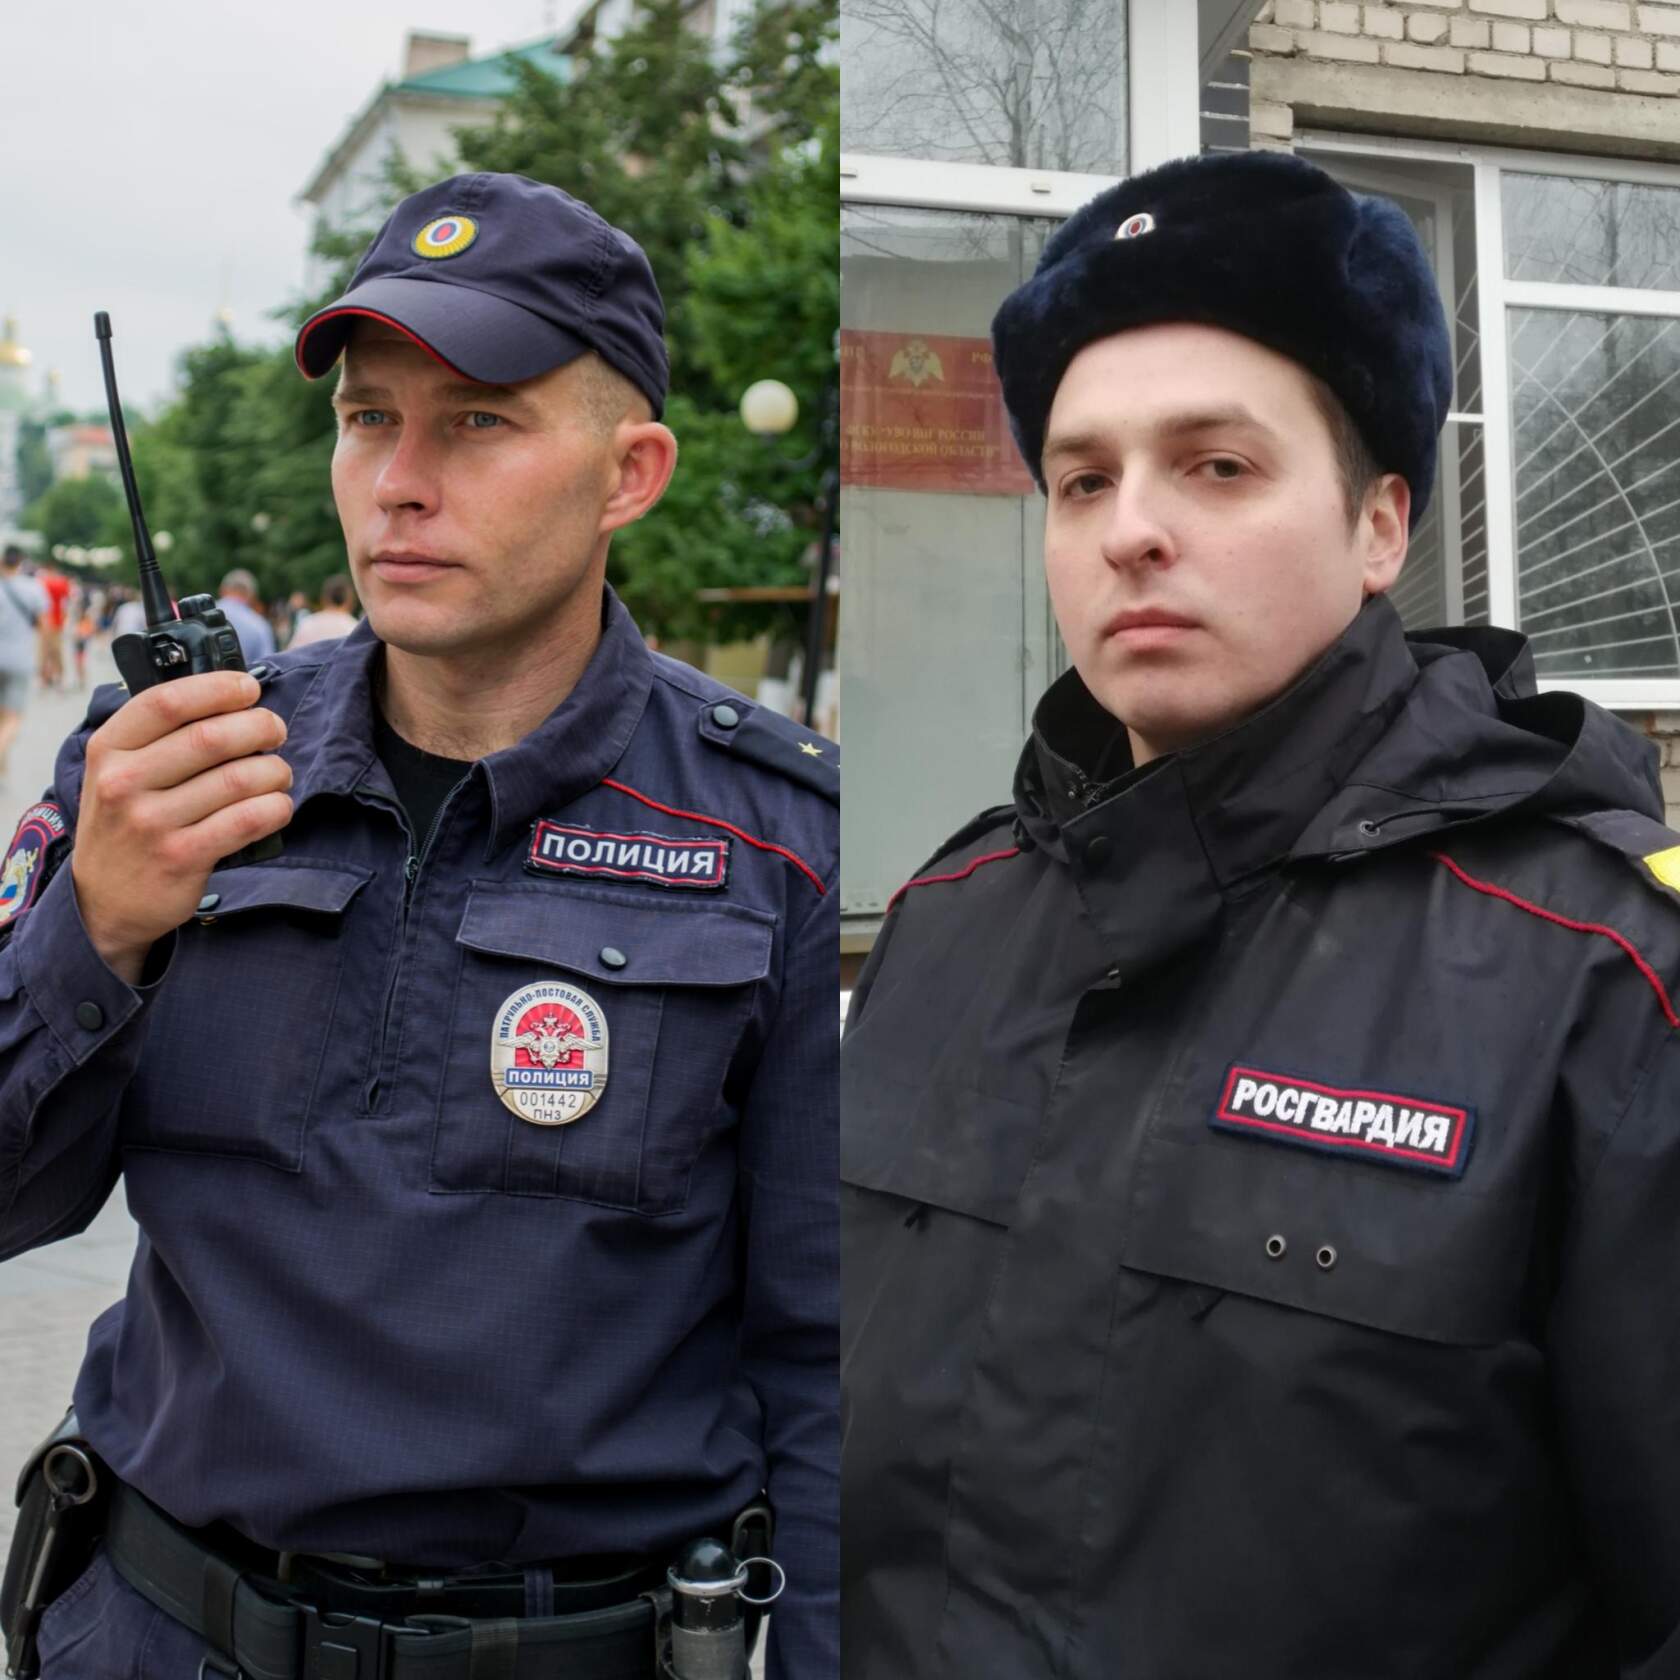 4 полк полиции внг россии